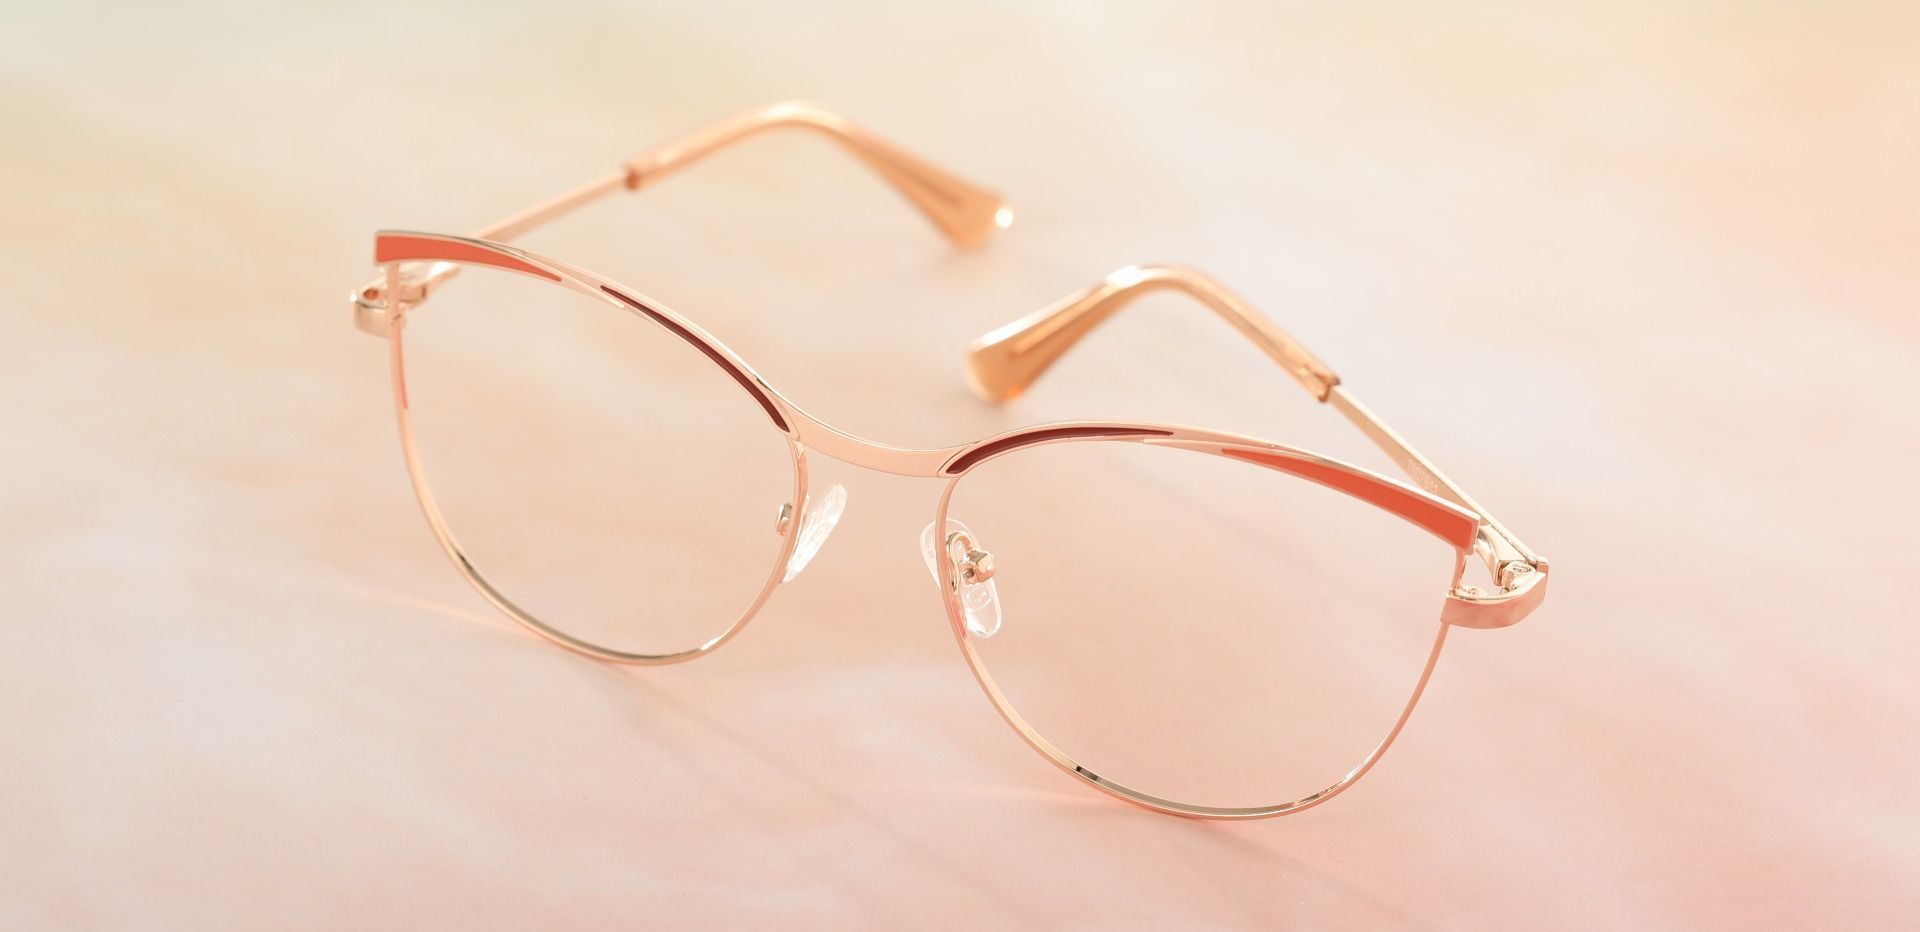 Amarillo Browline Prescription Glasses - Brown | Women's Eyeglasses ...